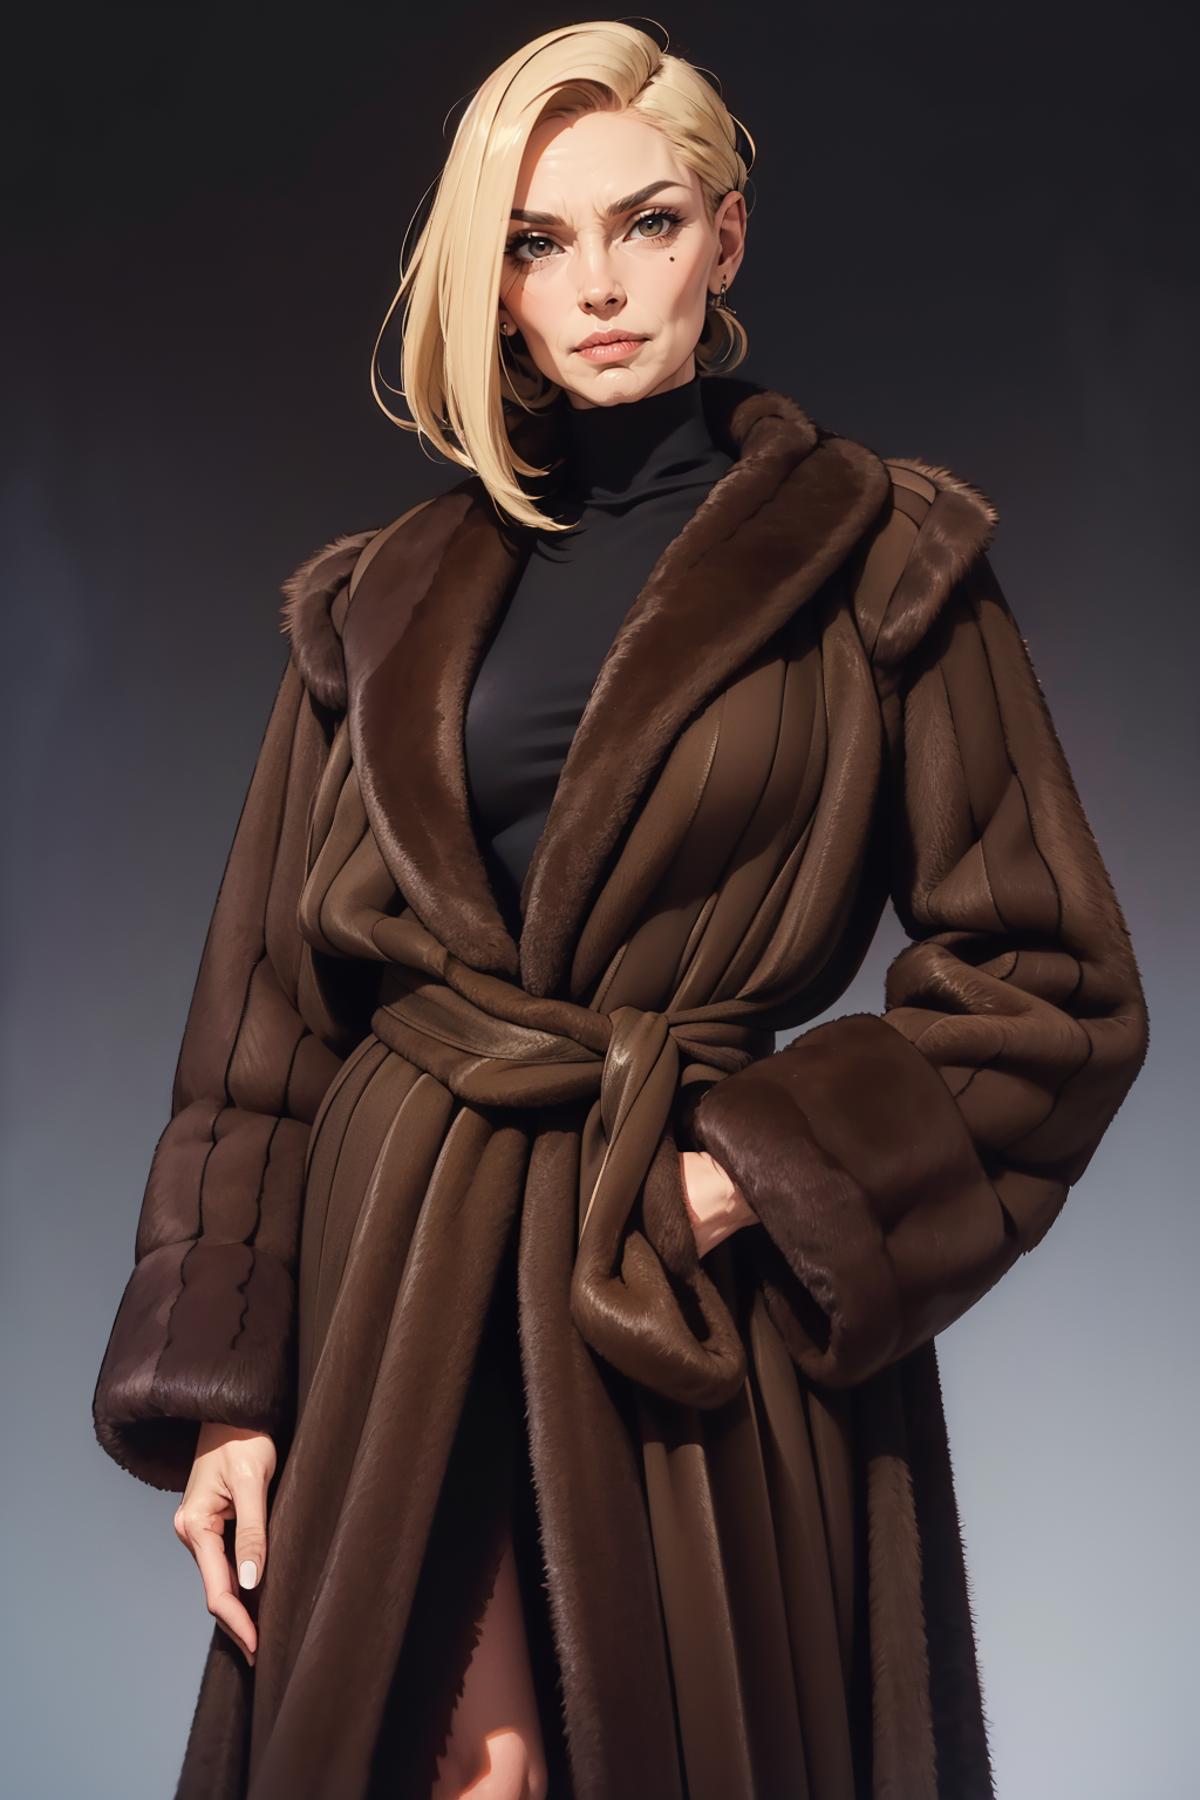 Vintage Mink Coat - Requested image by freckledvixon